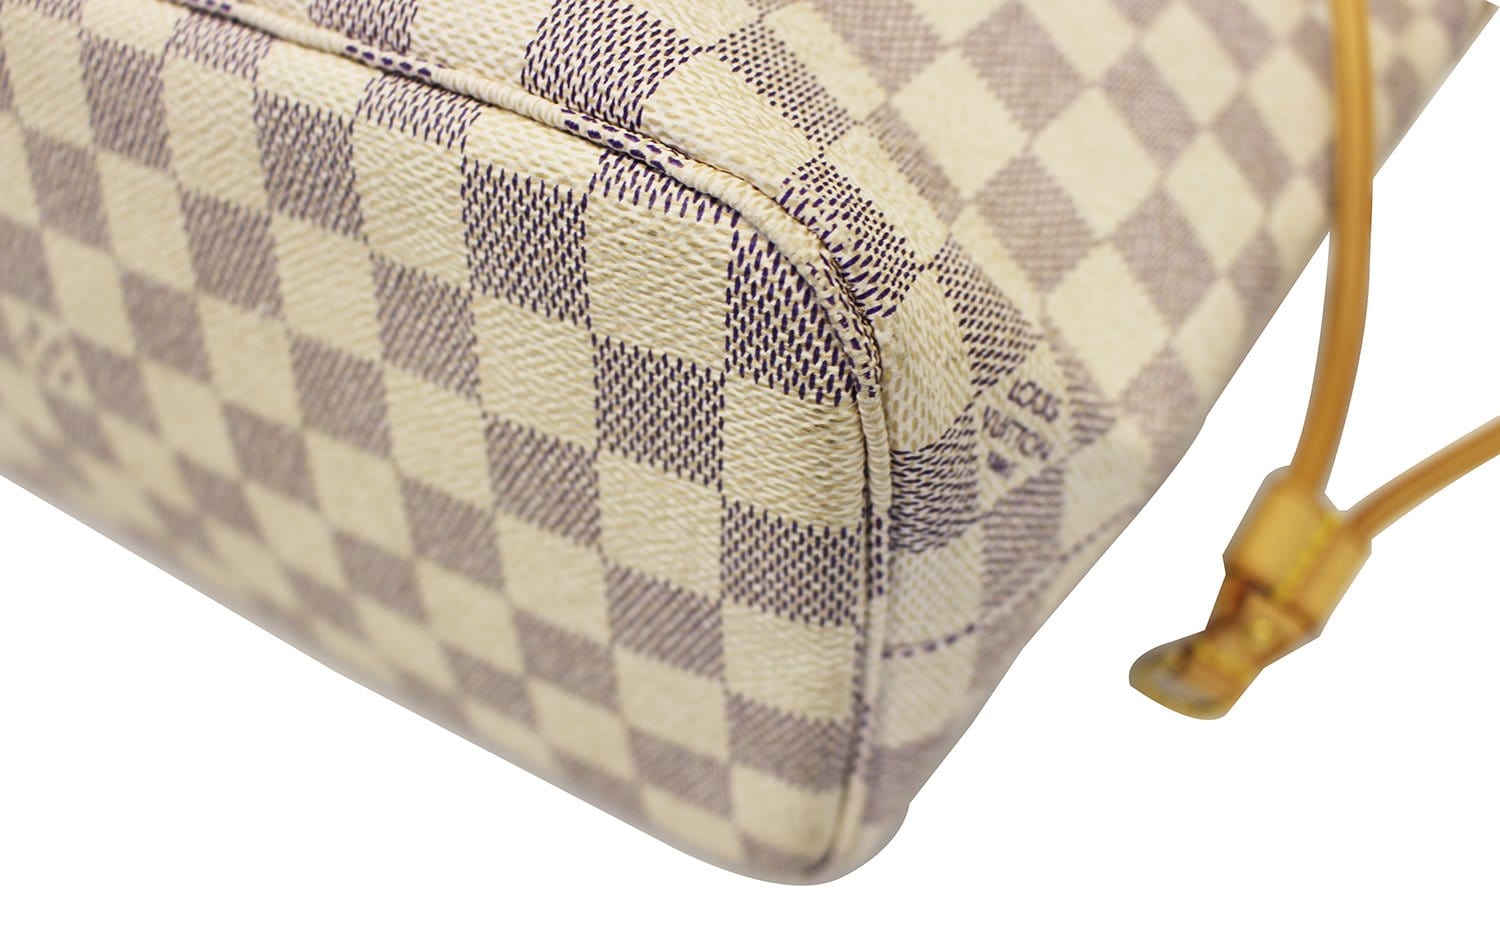 Authentic Louis Vuitton Damier Azur Neverfull PM Shoulder Tote Bag